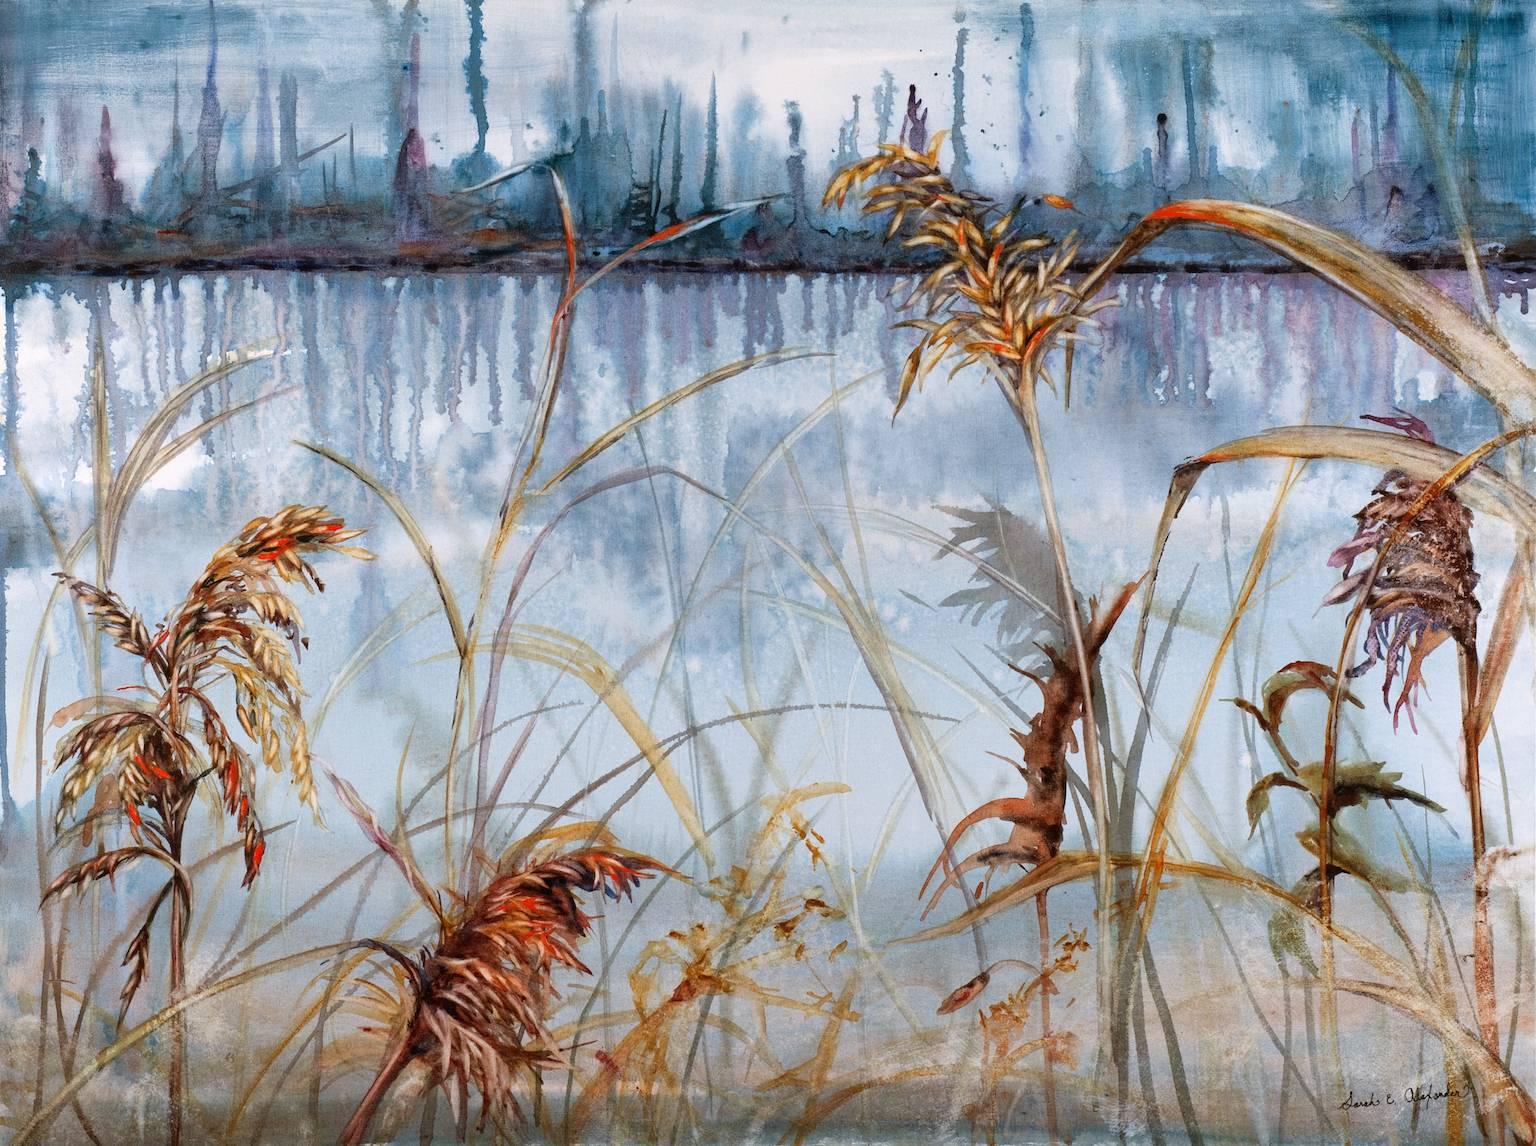 Landscape Art Sarah Alexander - "Musing", contemporain, paysage, marais, eau, bleu, rouge, peinture à l'aquarelle.